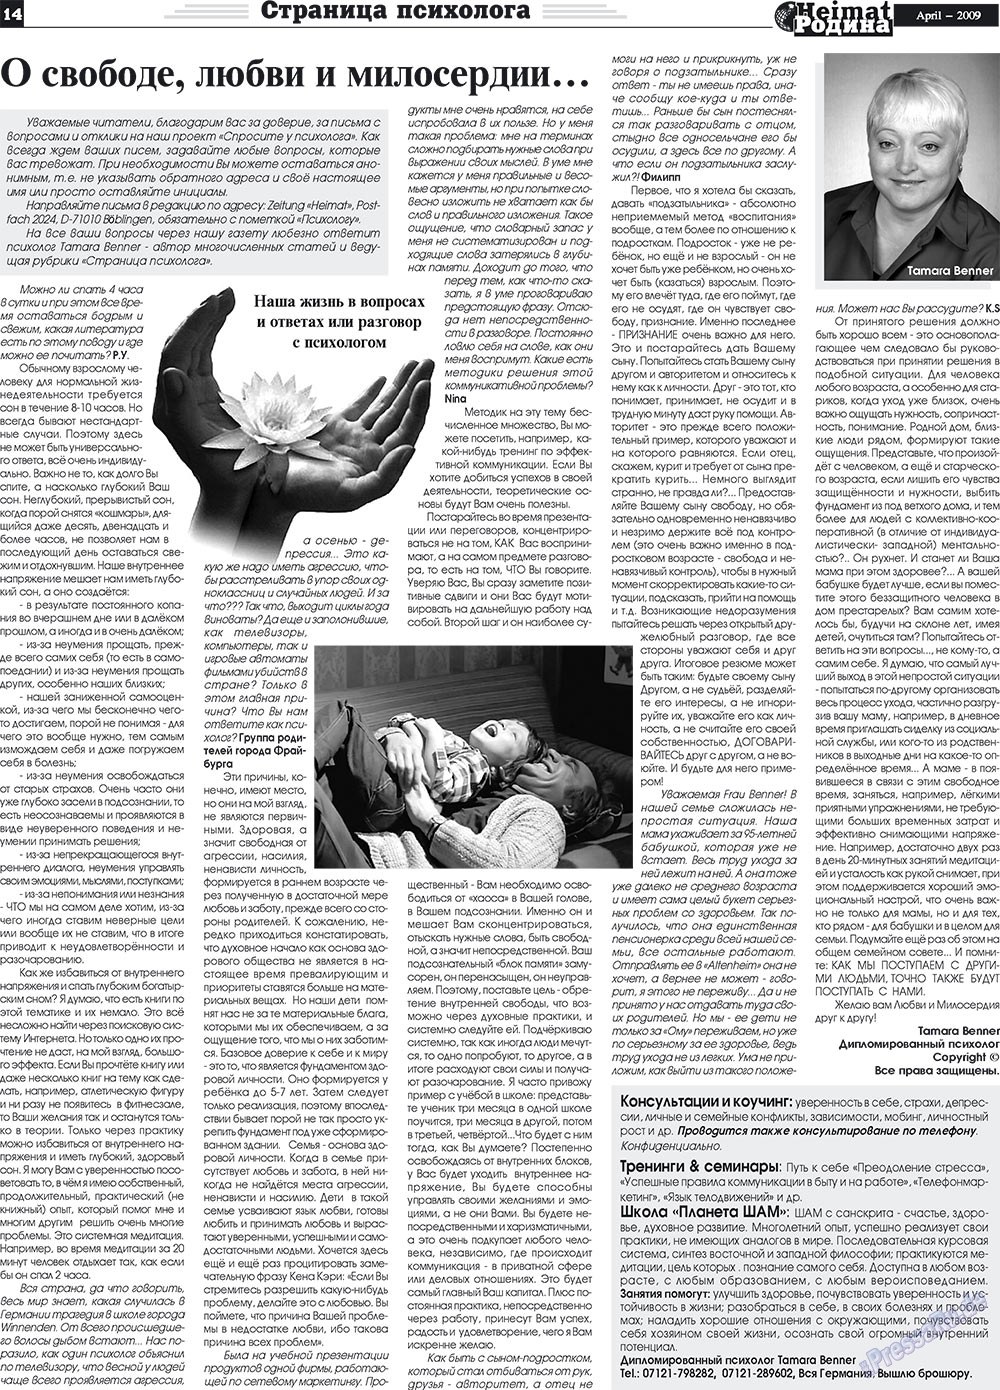 Heimat-Родина (газета). 2009 год, номер 4, стр. 14